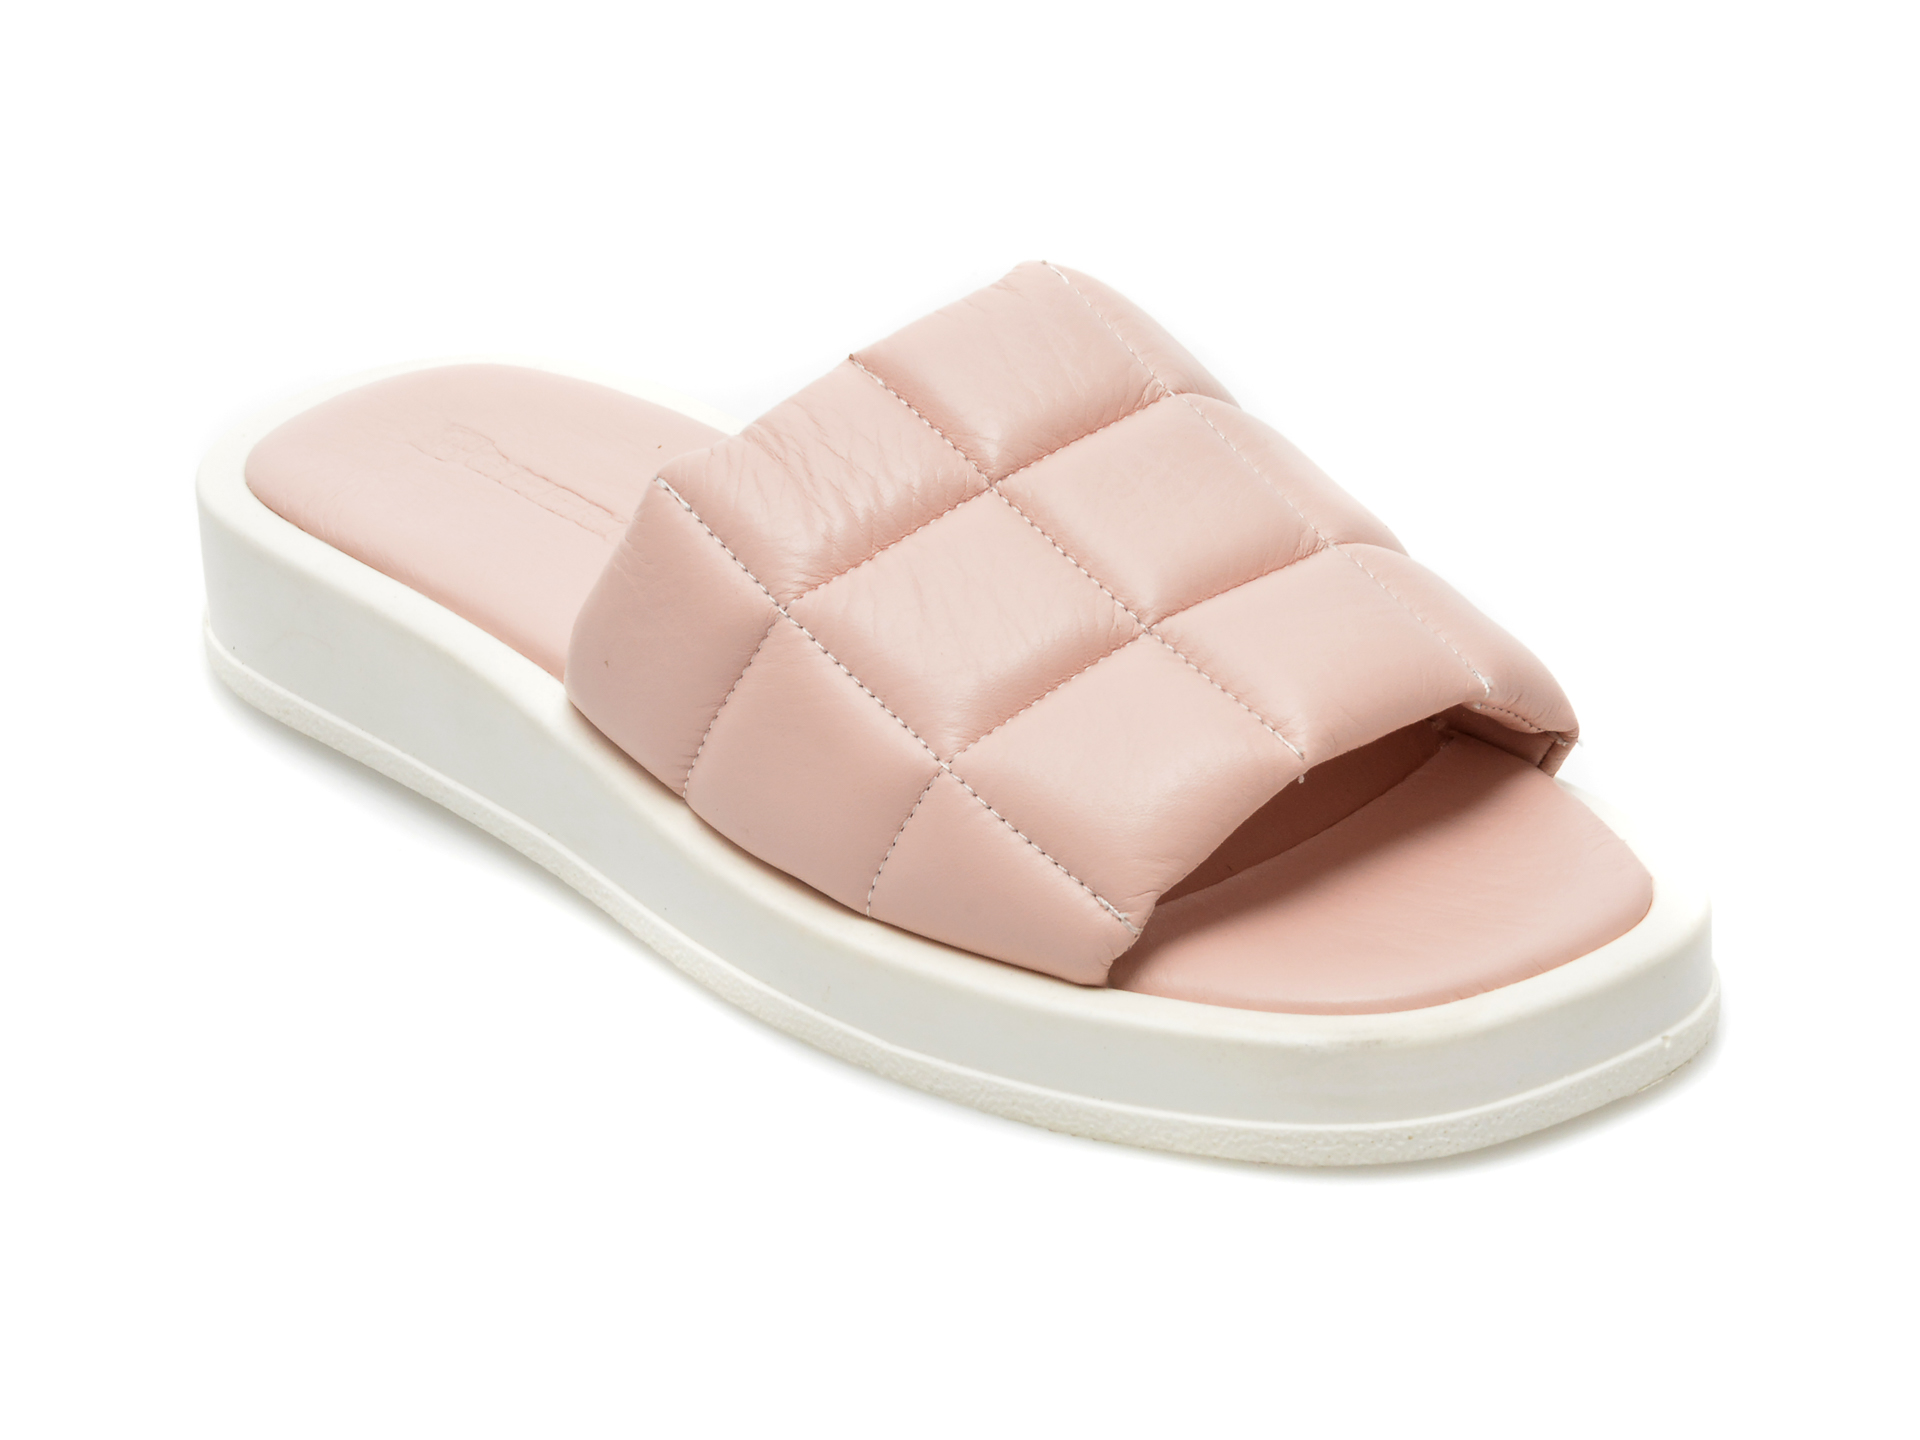 Papuci GUERO roz, 5005, din piele naturala GUERO